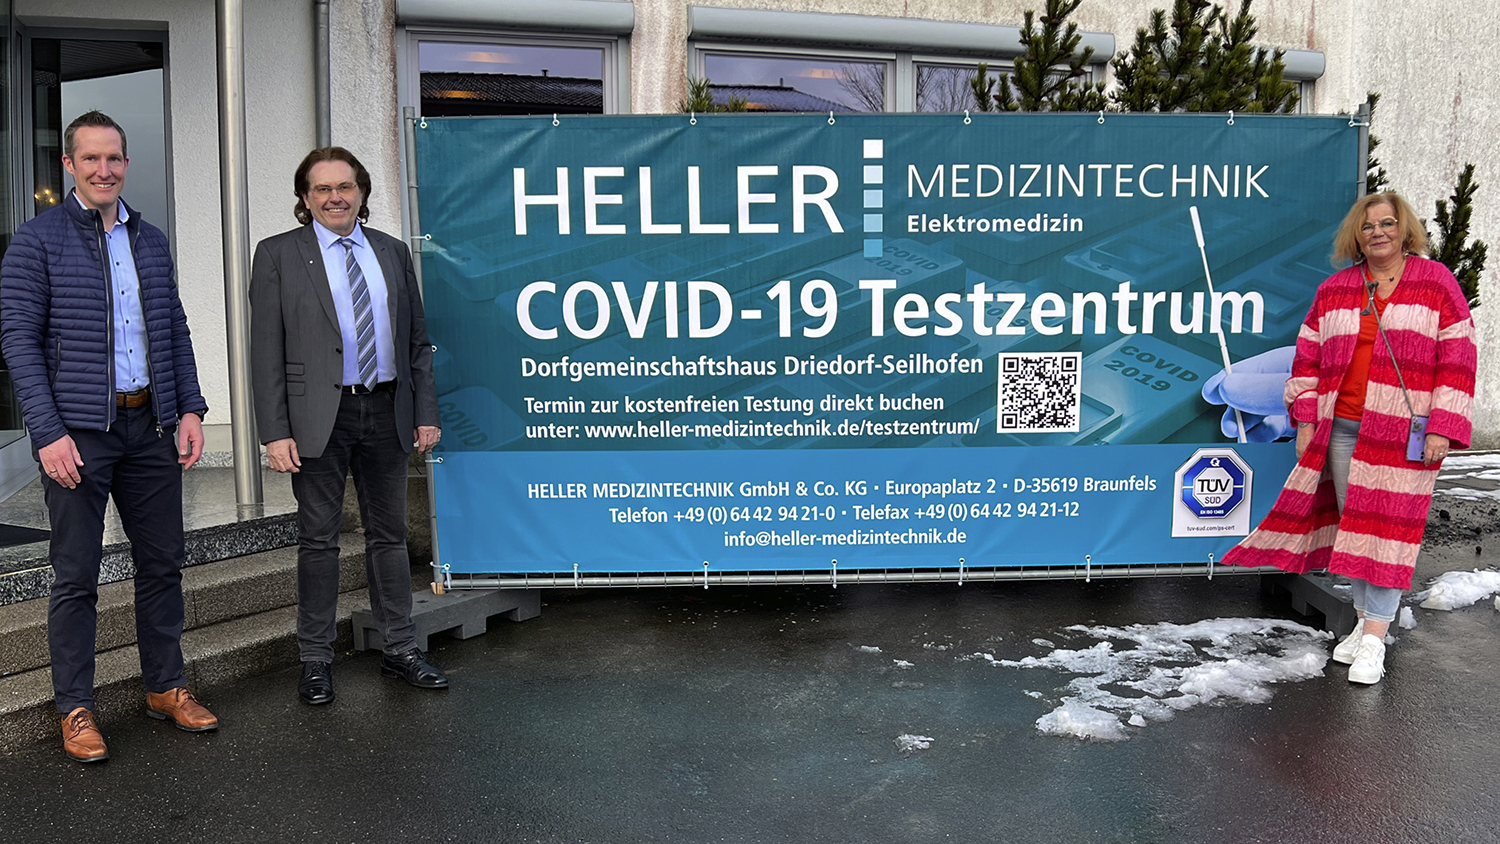 COVID-19 Schnelltest buchen bei HELLER MEDIZINTECHNIK GmbH & Co. KG